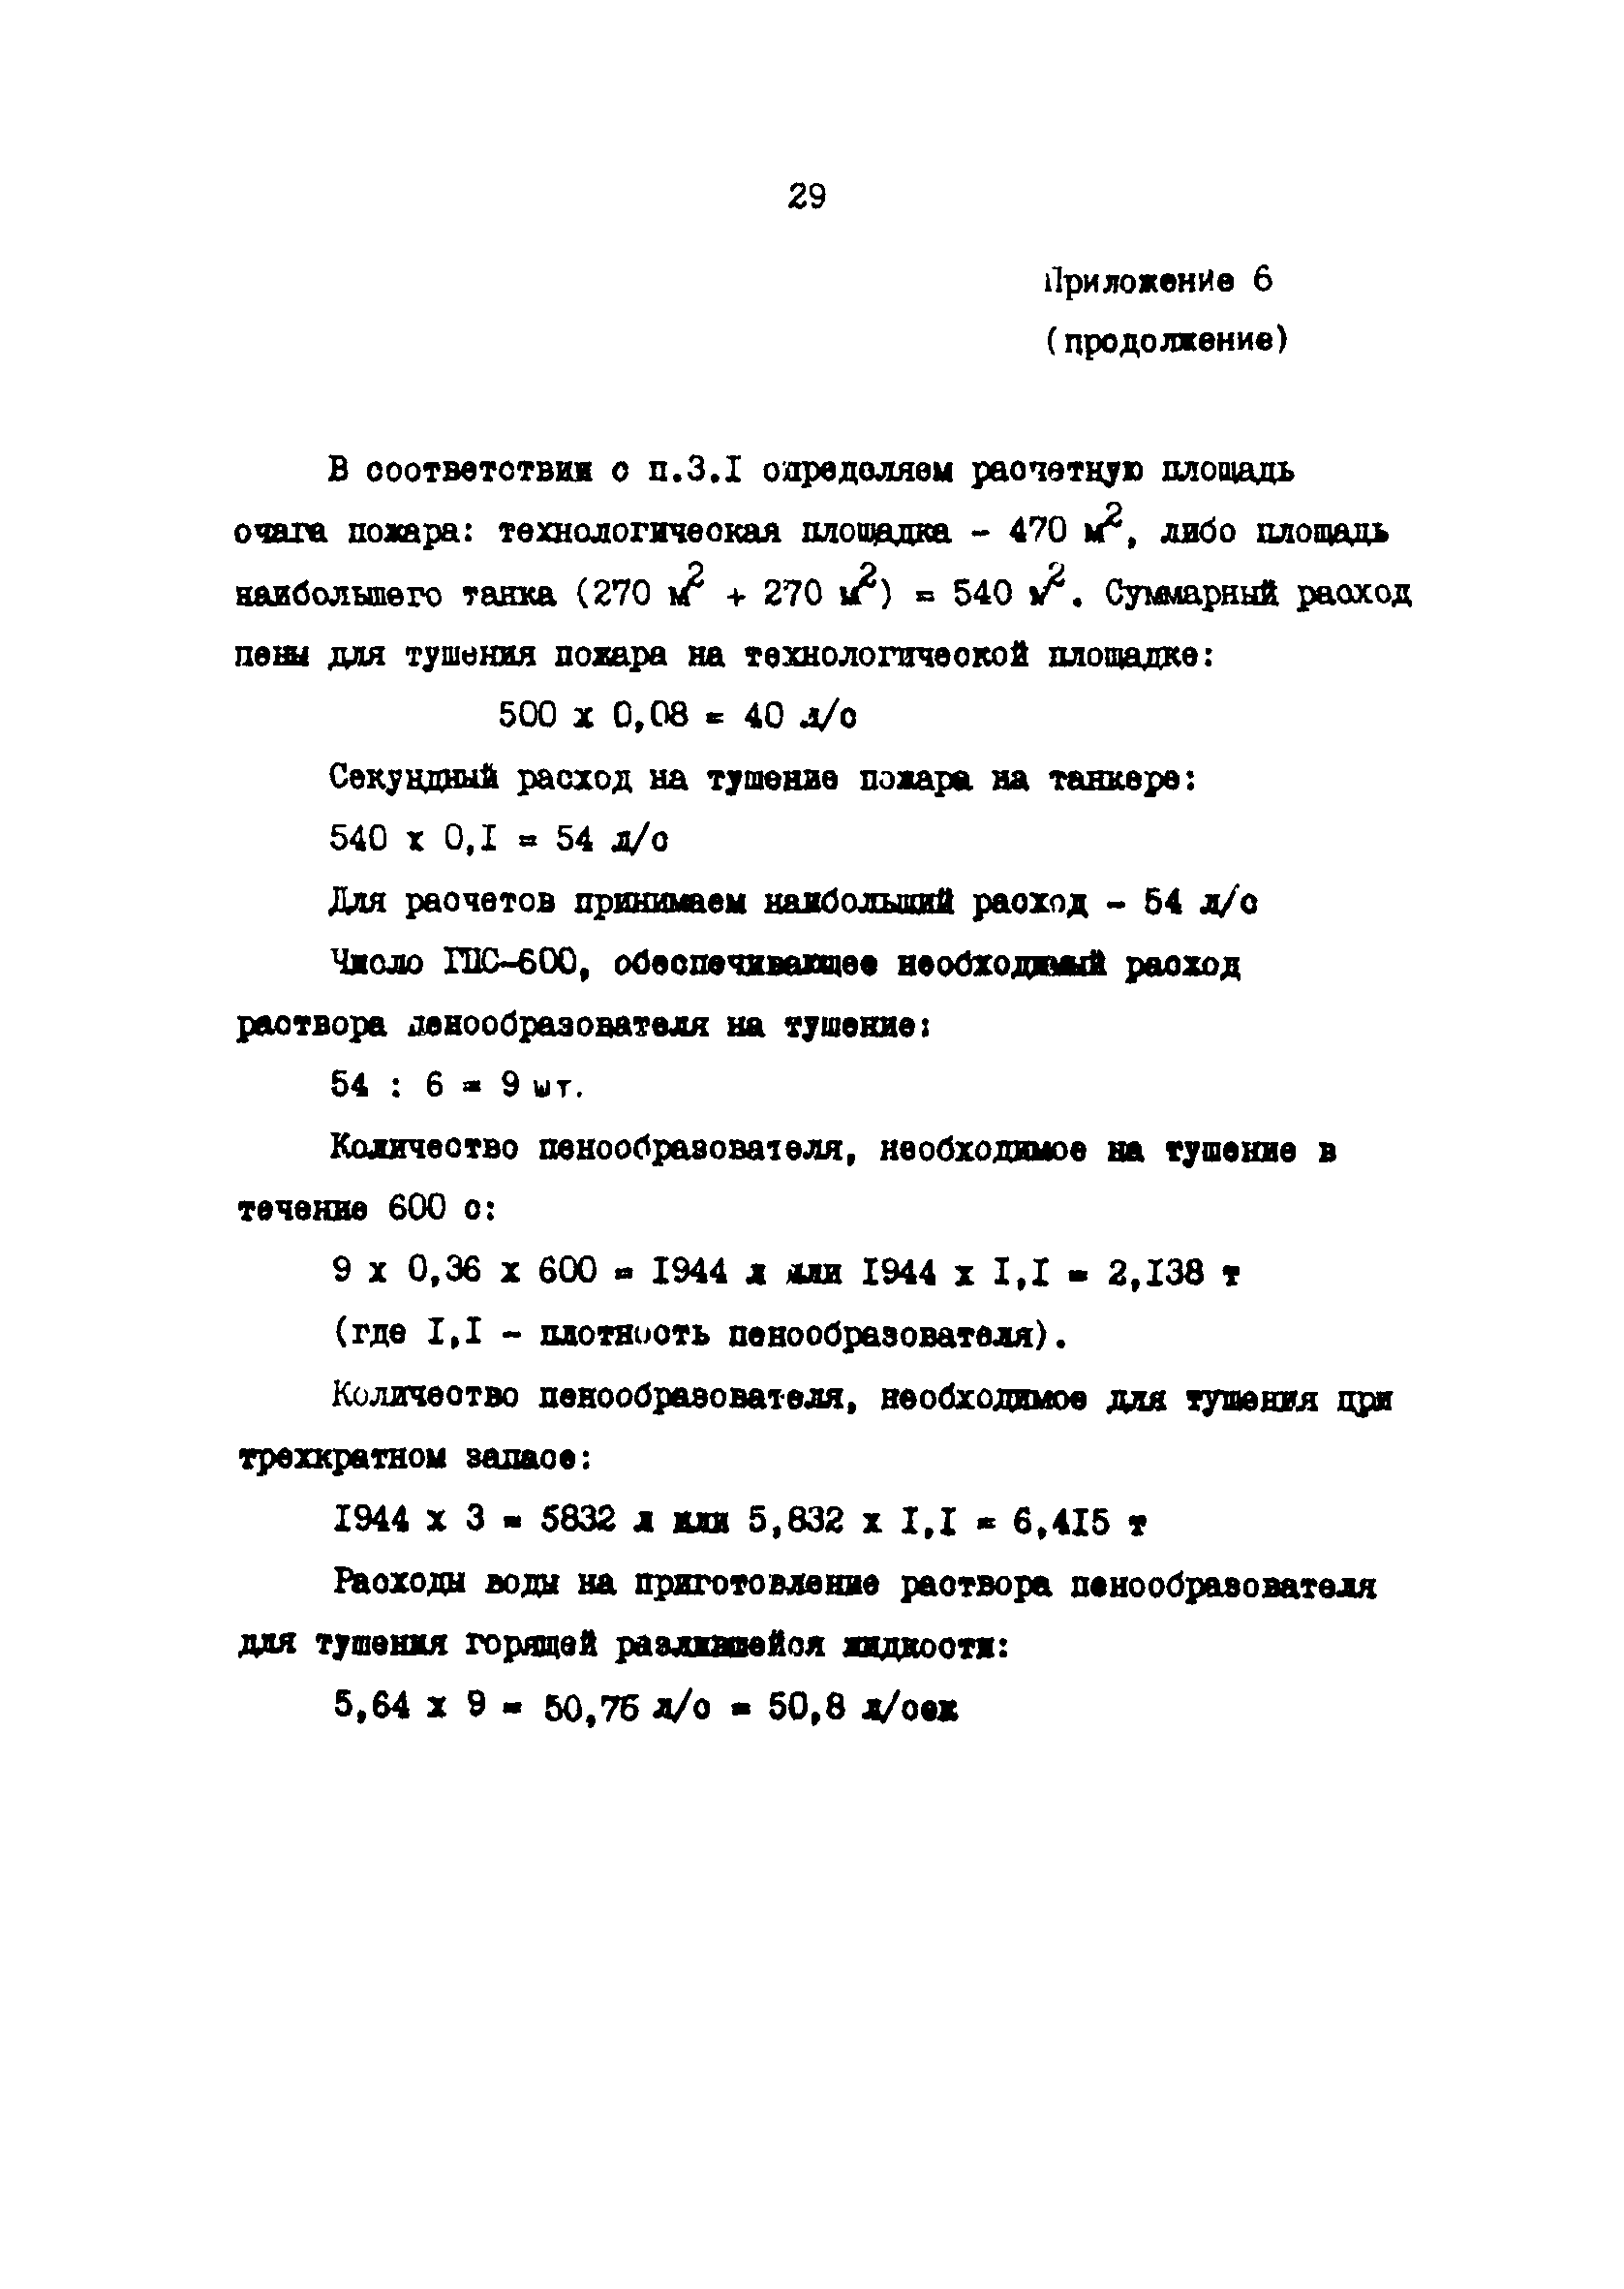 ВСН 12-87/ММФ